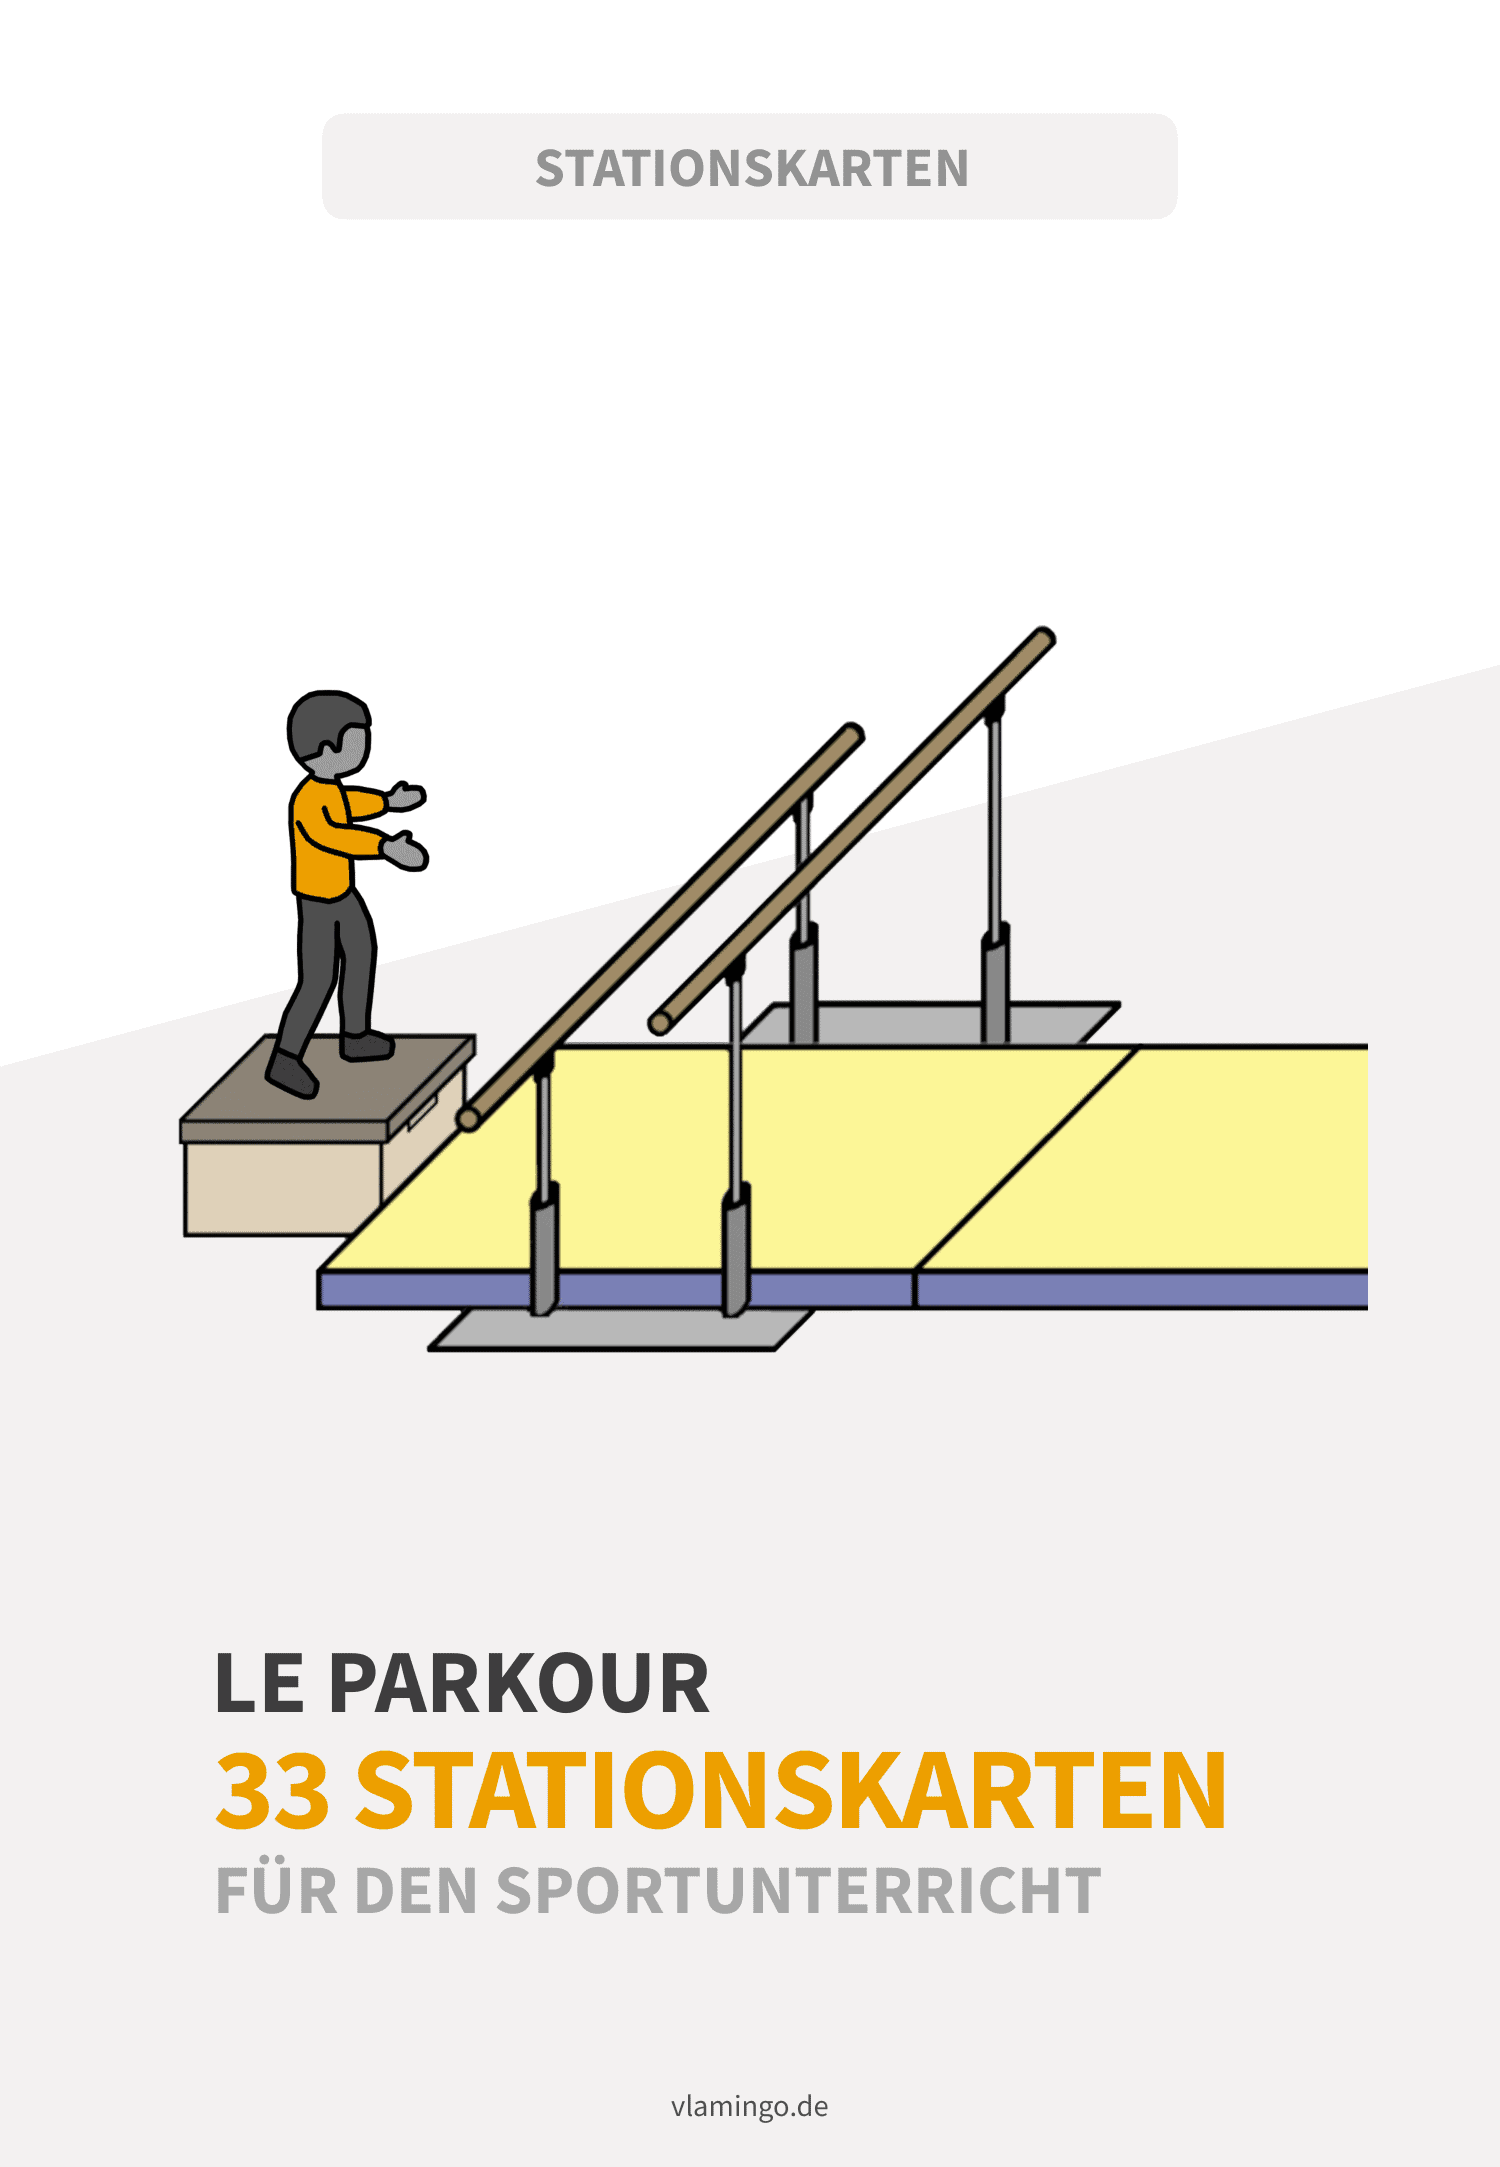 Le Parkour - 33 Stationskarten für den Sportunterricht